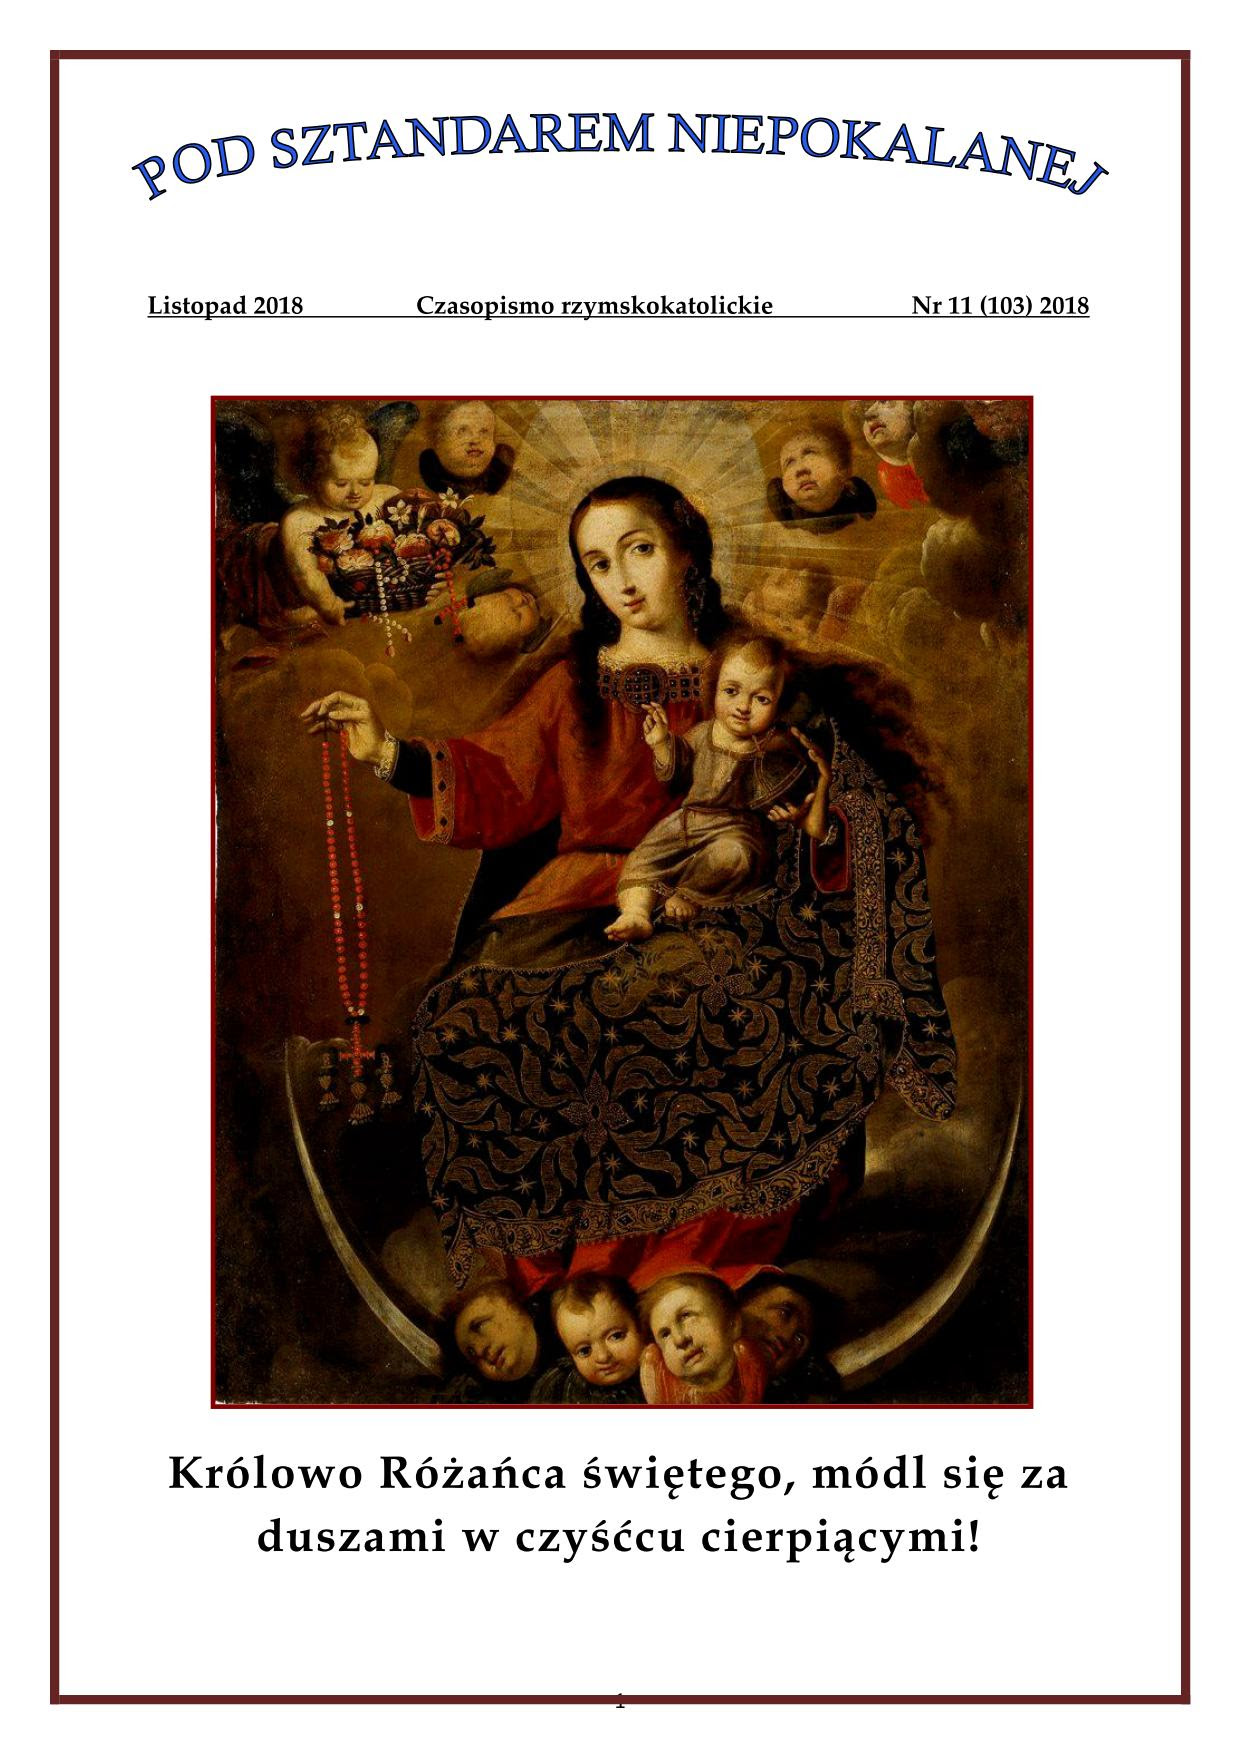 "Pod sztandarem Niepokalanej". Nr 103. Listopad 2018. Czasopismo rzymskokatolickie.